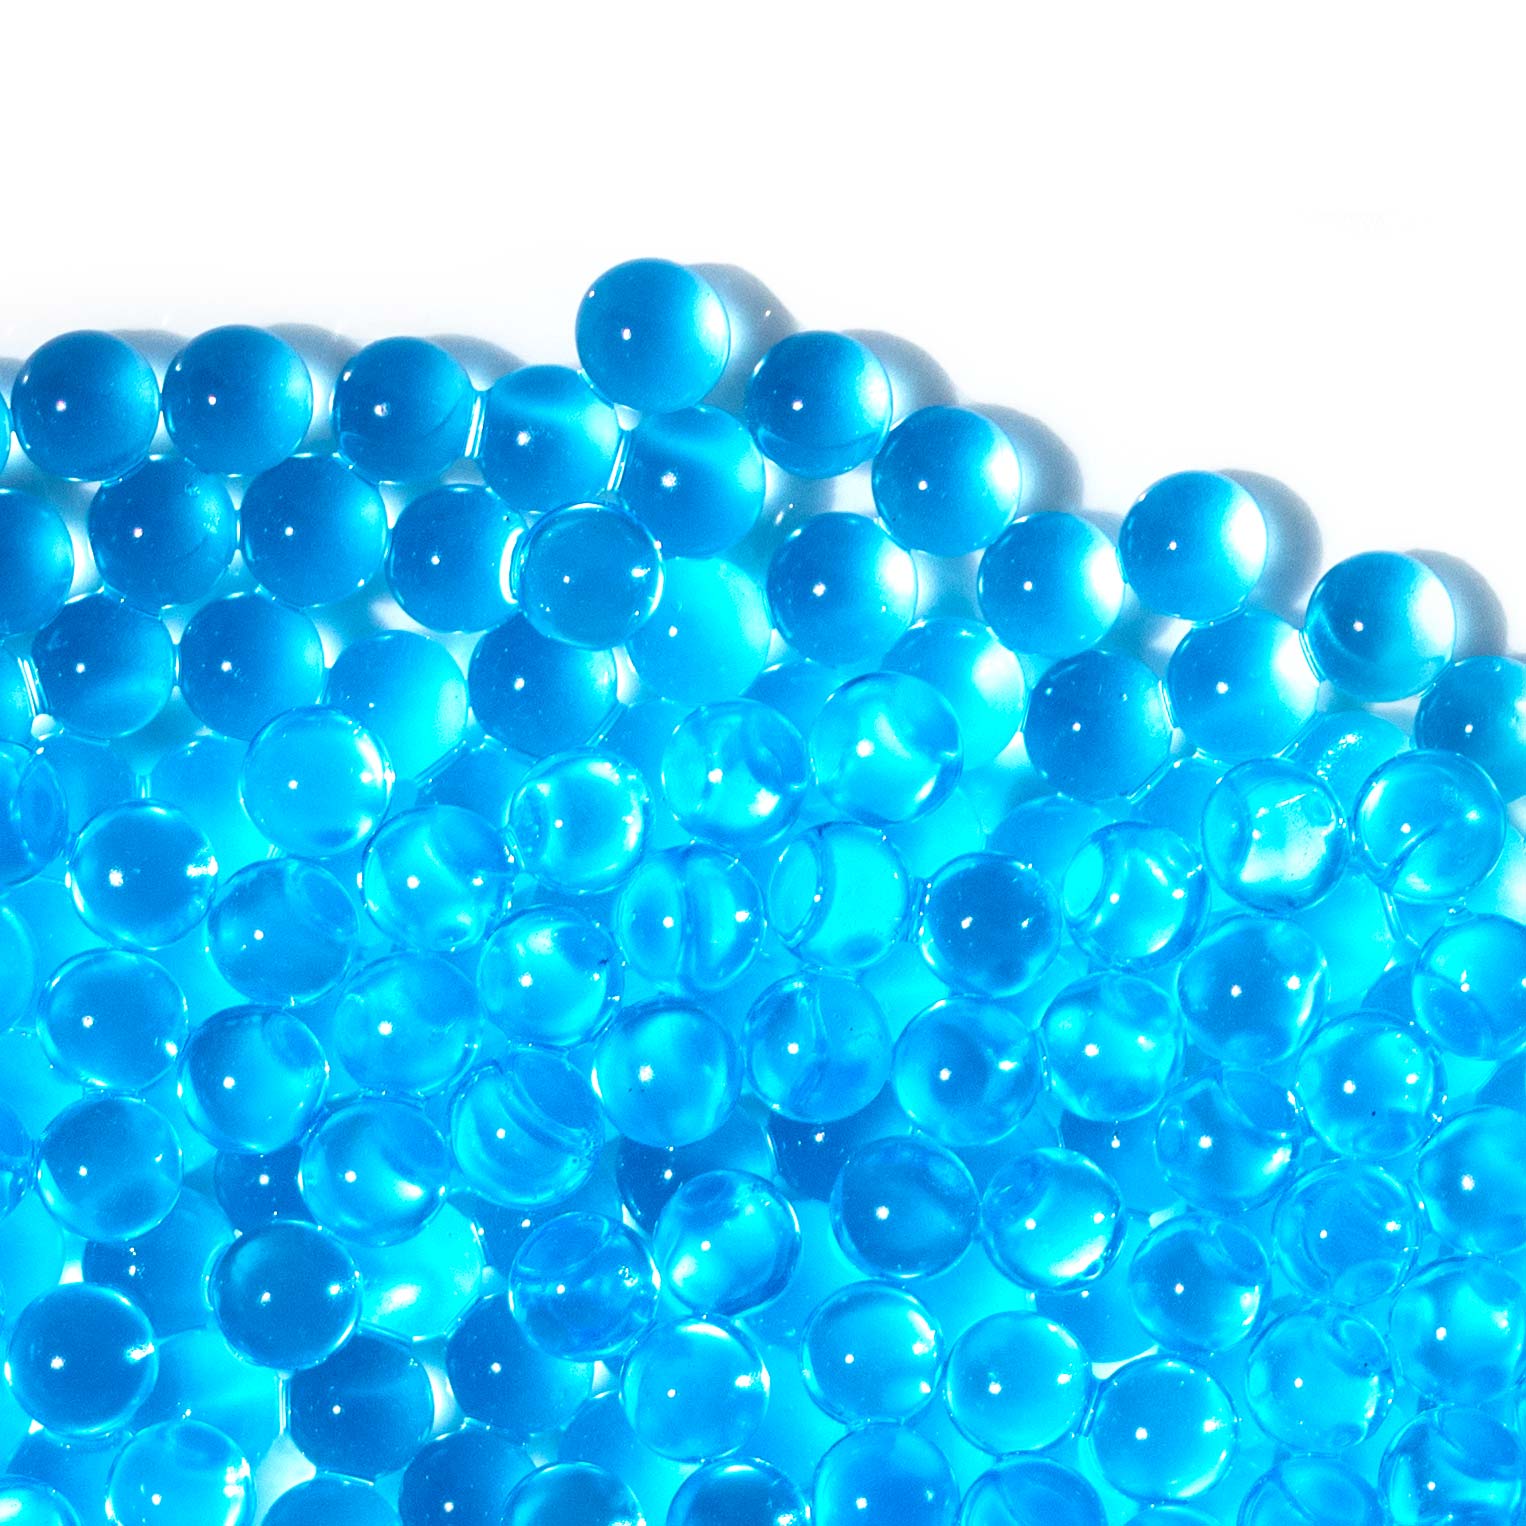 Field GelBlast 10k Balls Refill - Blue